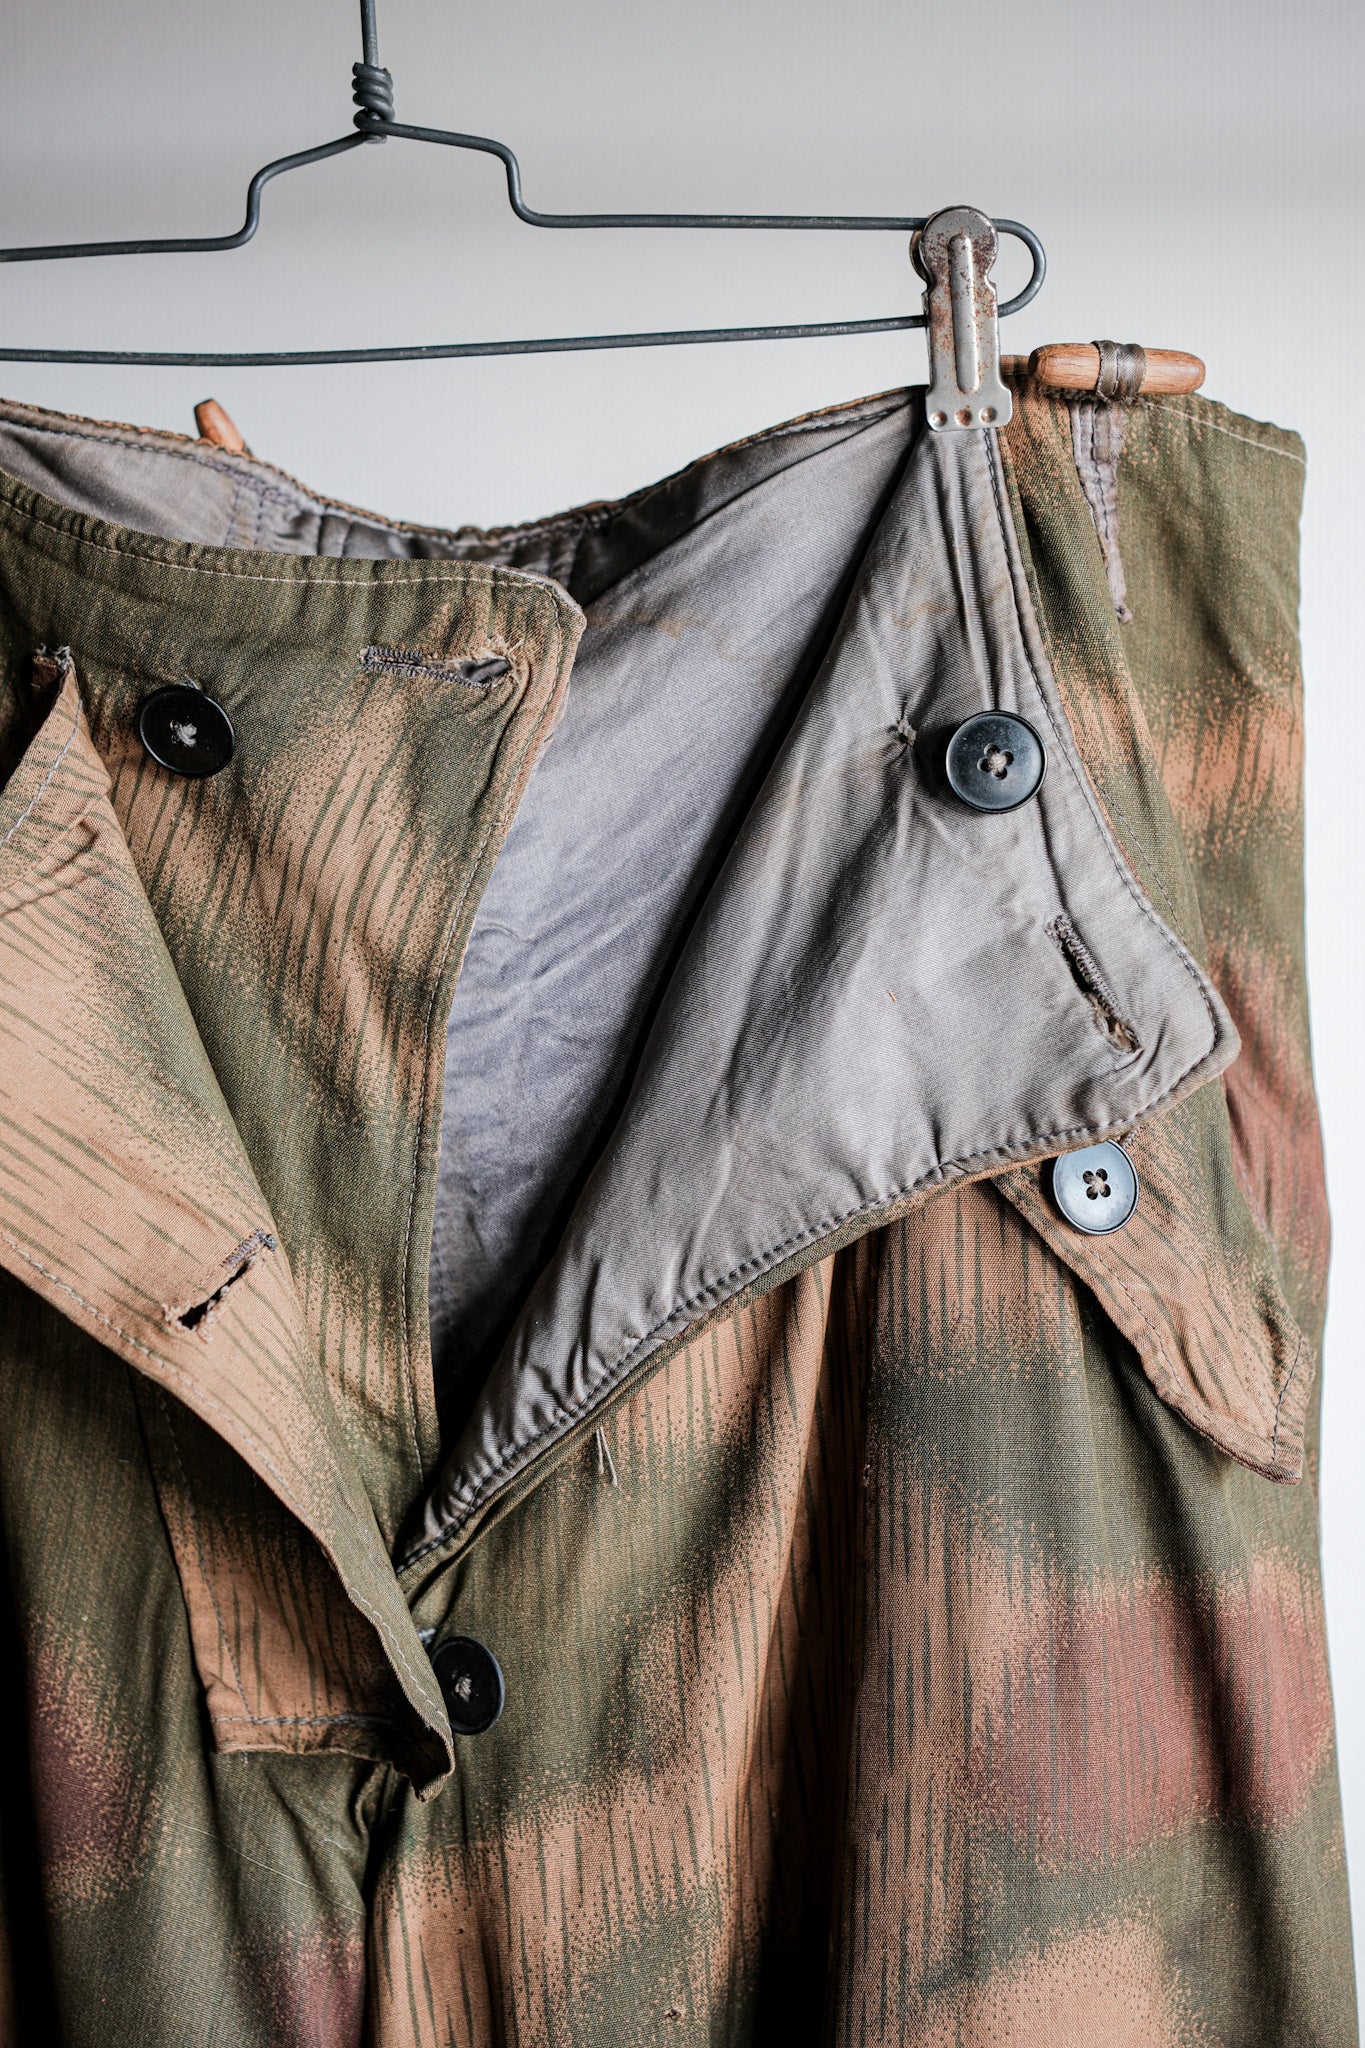 [〜40年代]wwⅱ德國軍隊sumpfternmster 44偽裝43圖案冬季褲子“ wehrmacht”